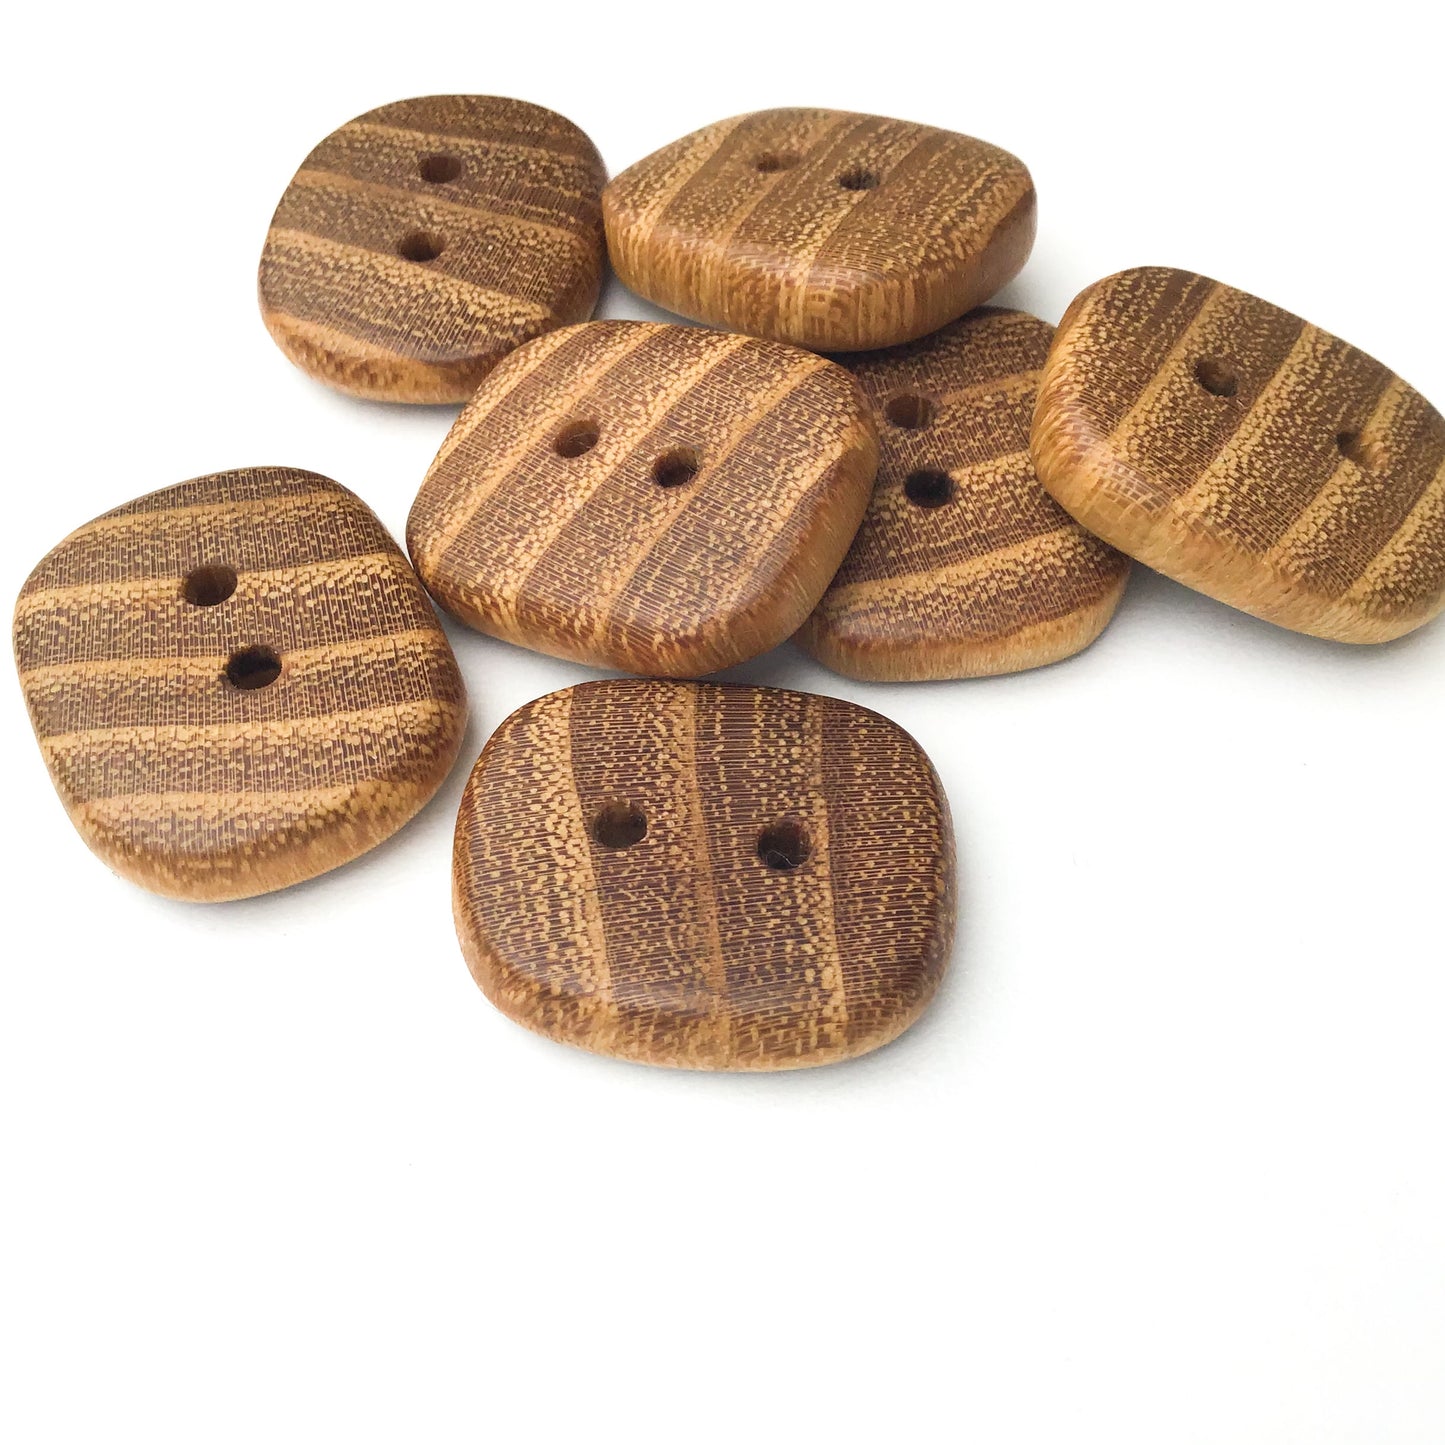 Black Locust Wood Buttons - Rectangular Wood Buttons - 7/8" X 1" - 7 Pack